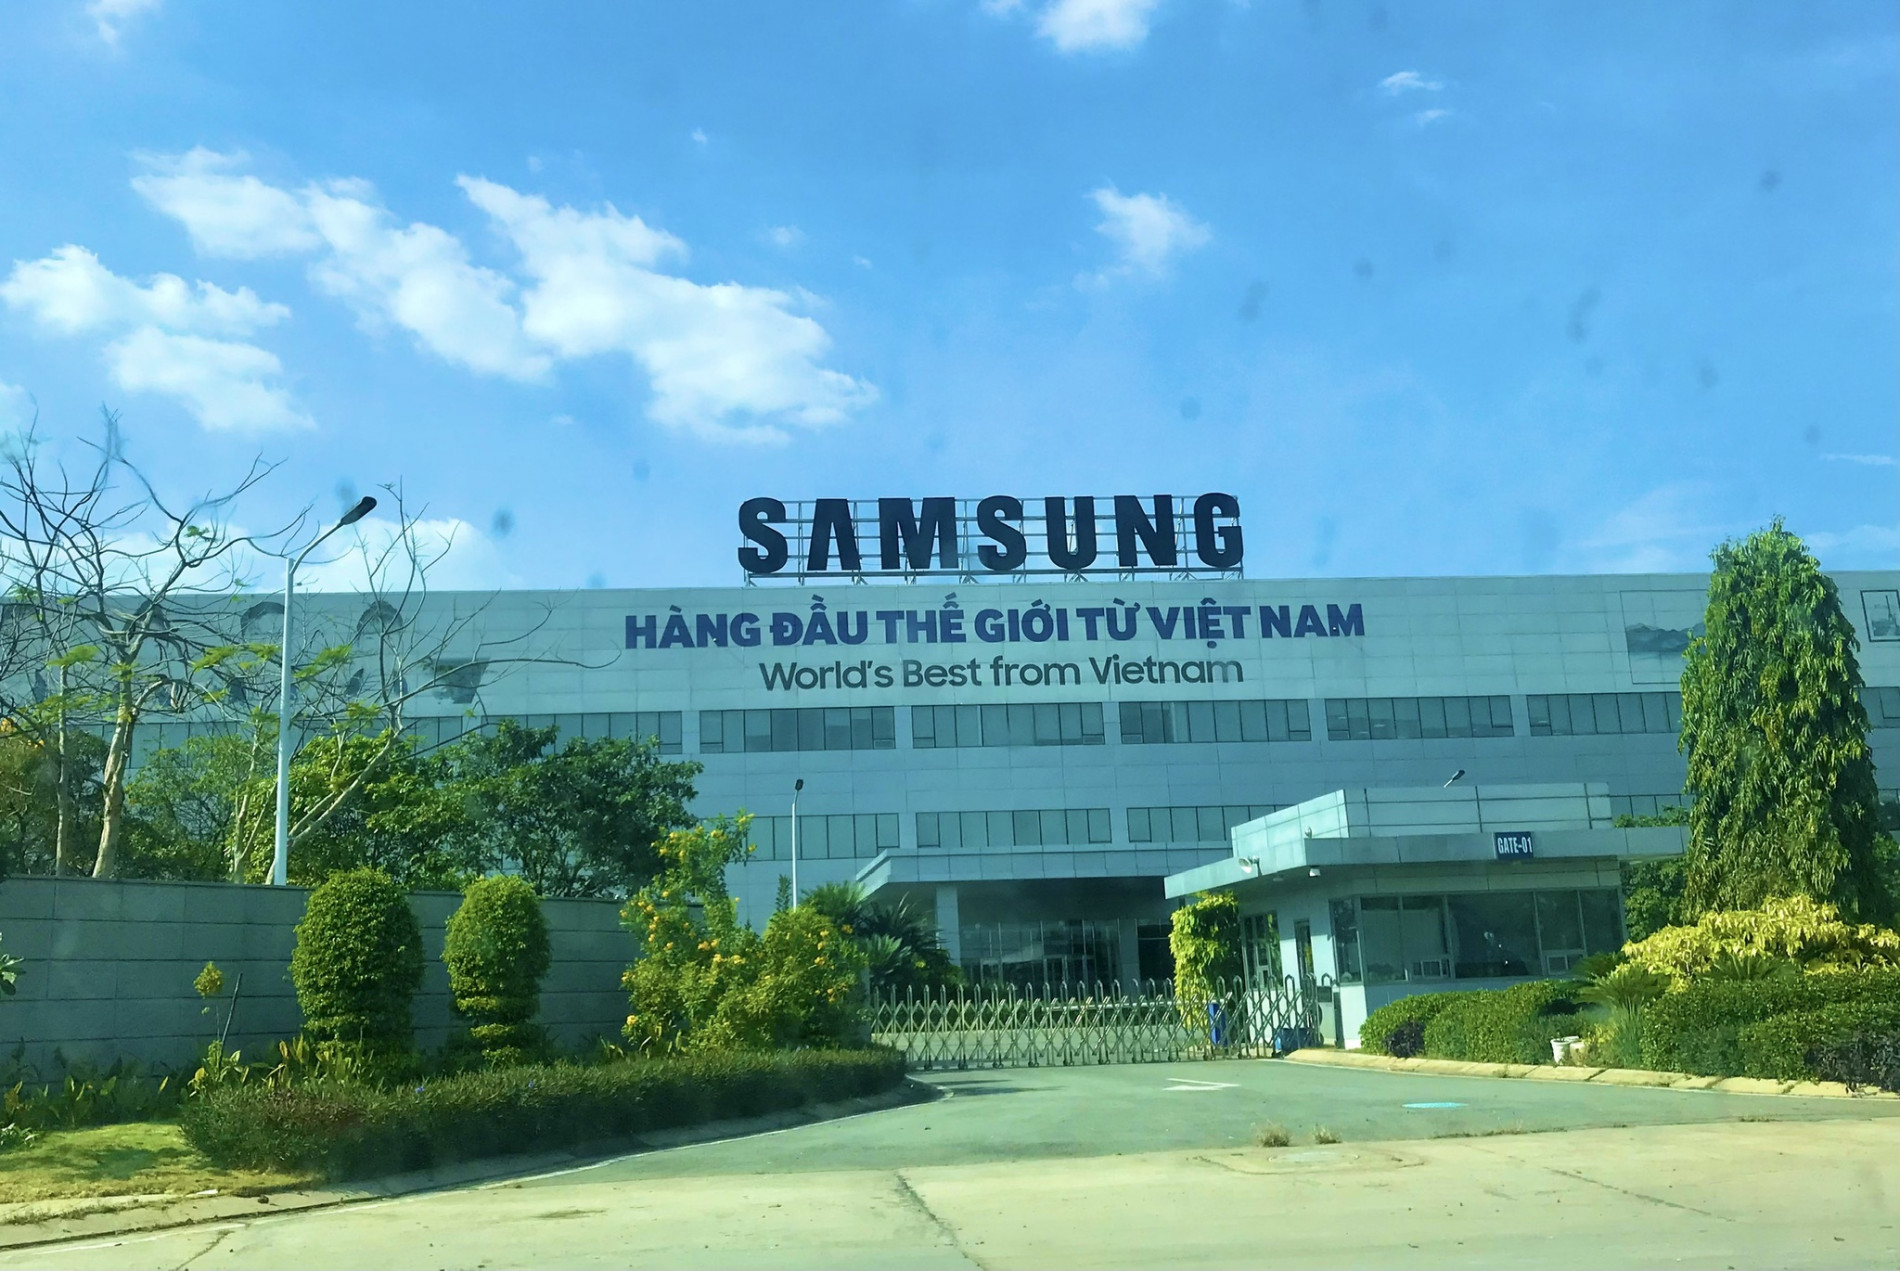 Samsung rót thêm 920 triệu USD vào dự án ở Thái Nguyên - ảnh 1